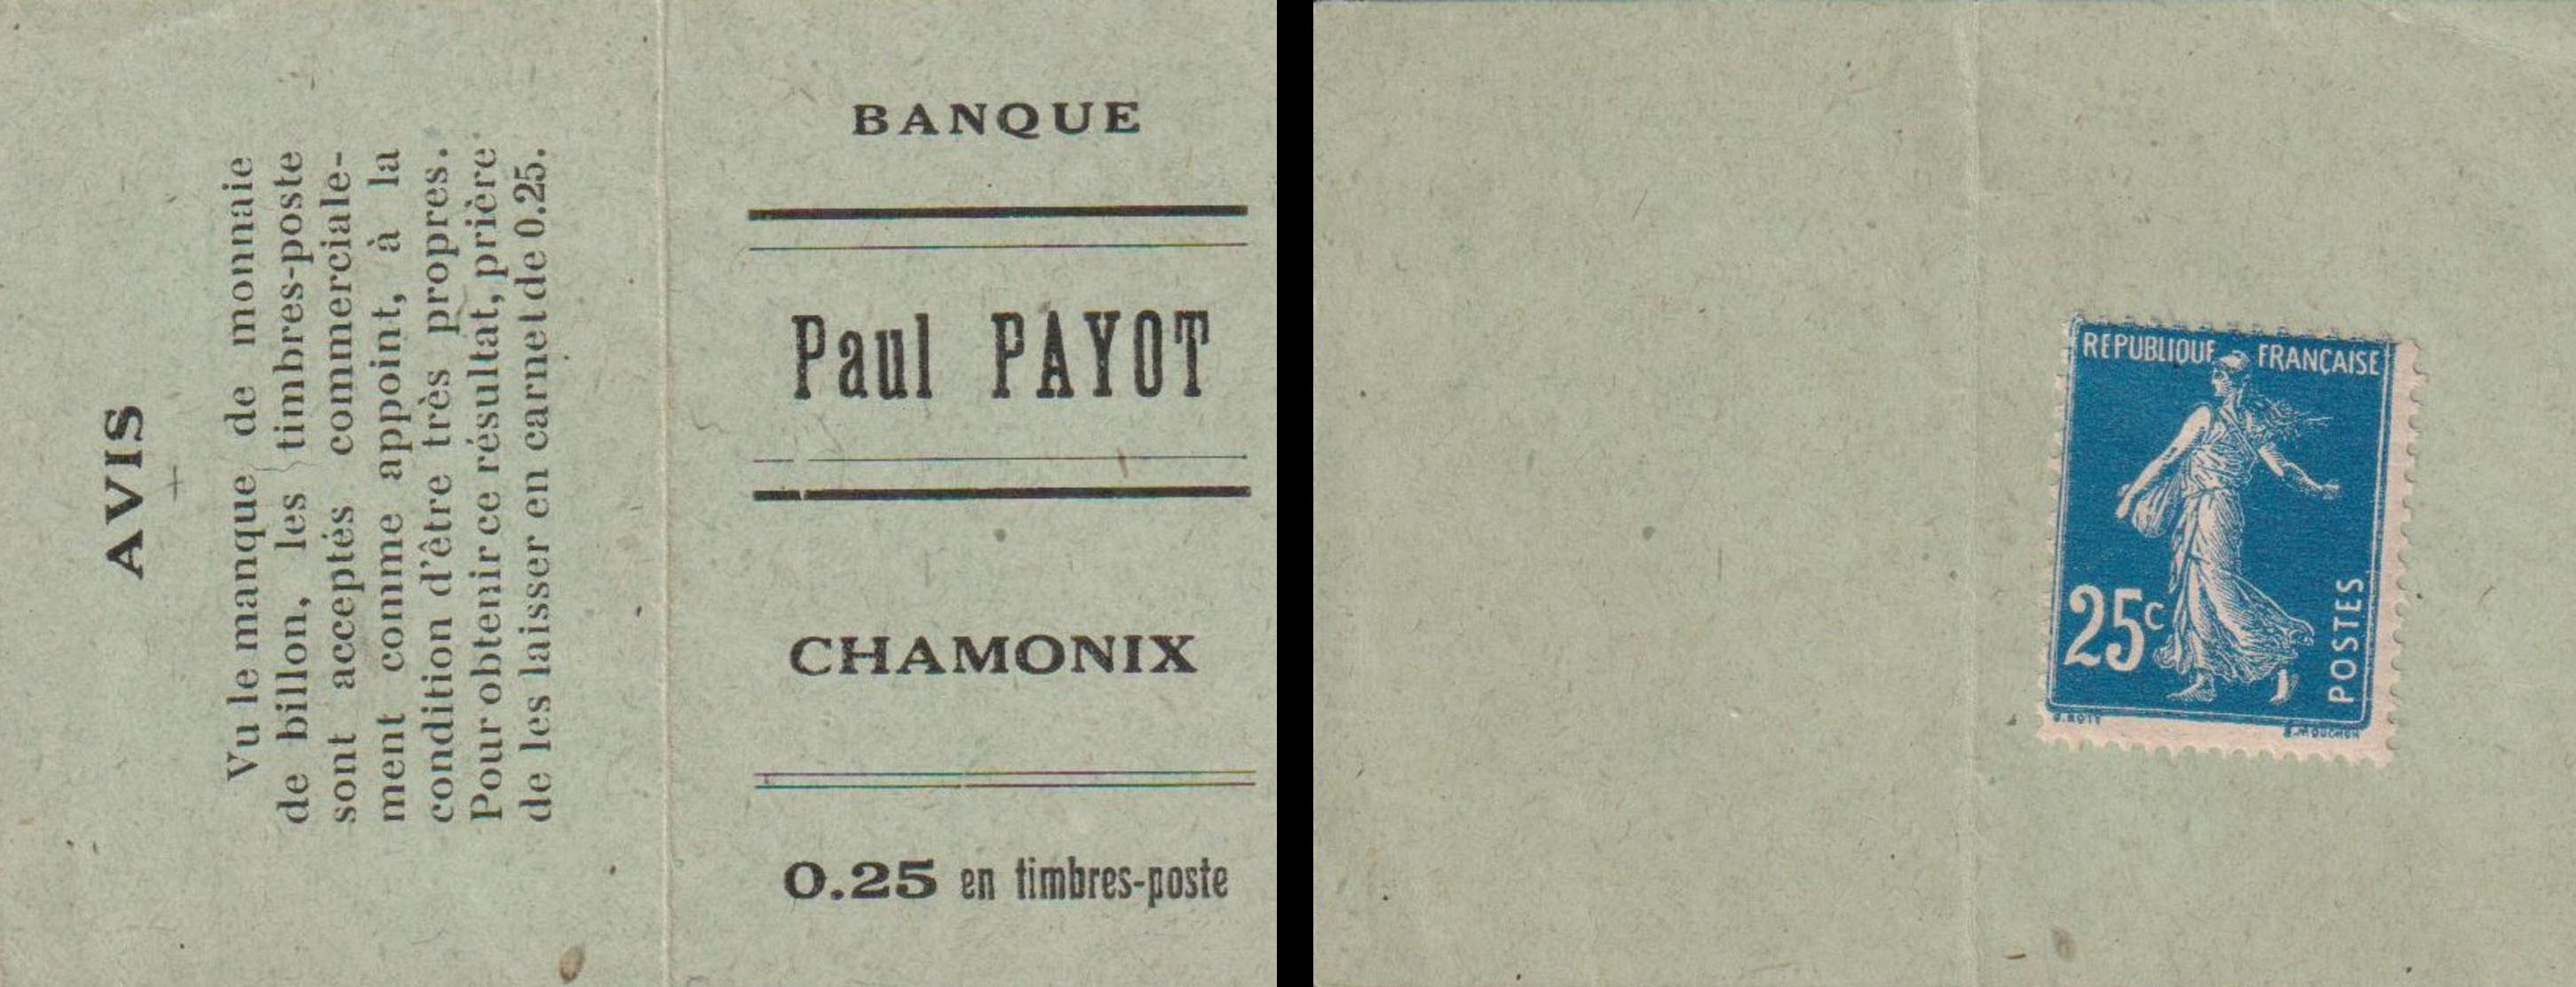 Carnet de 25 centimes Banque Paul Payot a été vendu 2 222€ le 25mars 2020 sur Delcampe